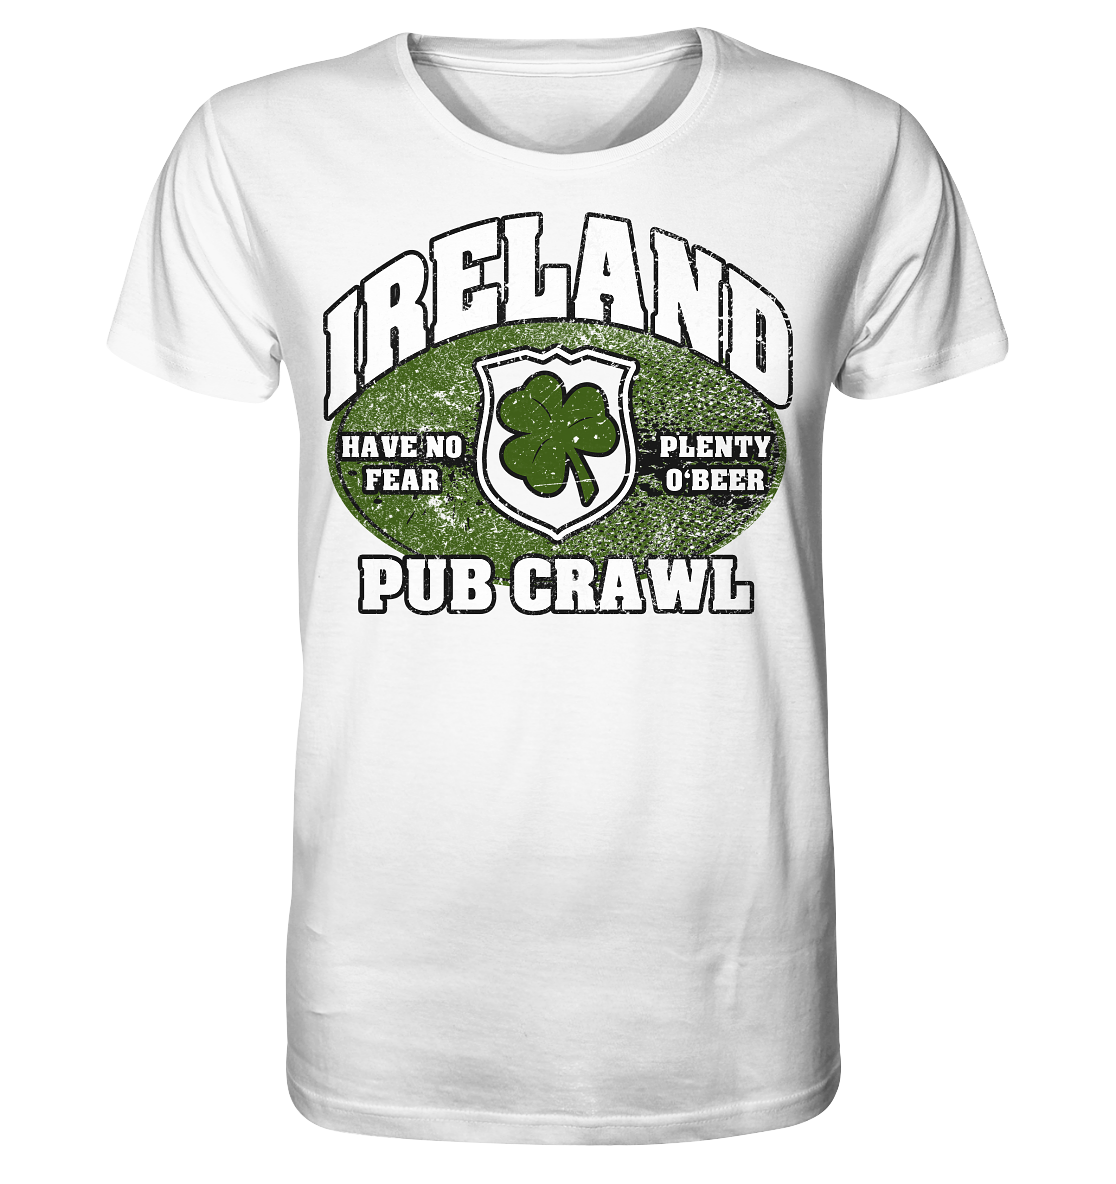 Ireland "Pub Crawl" - Organic Shirt